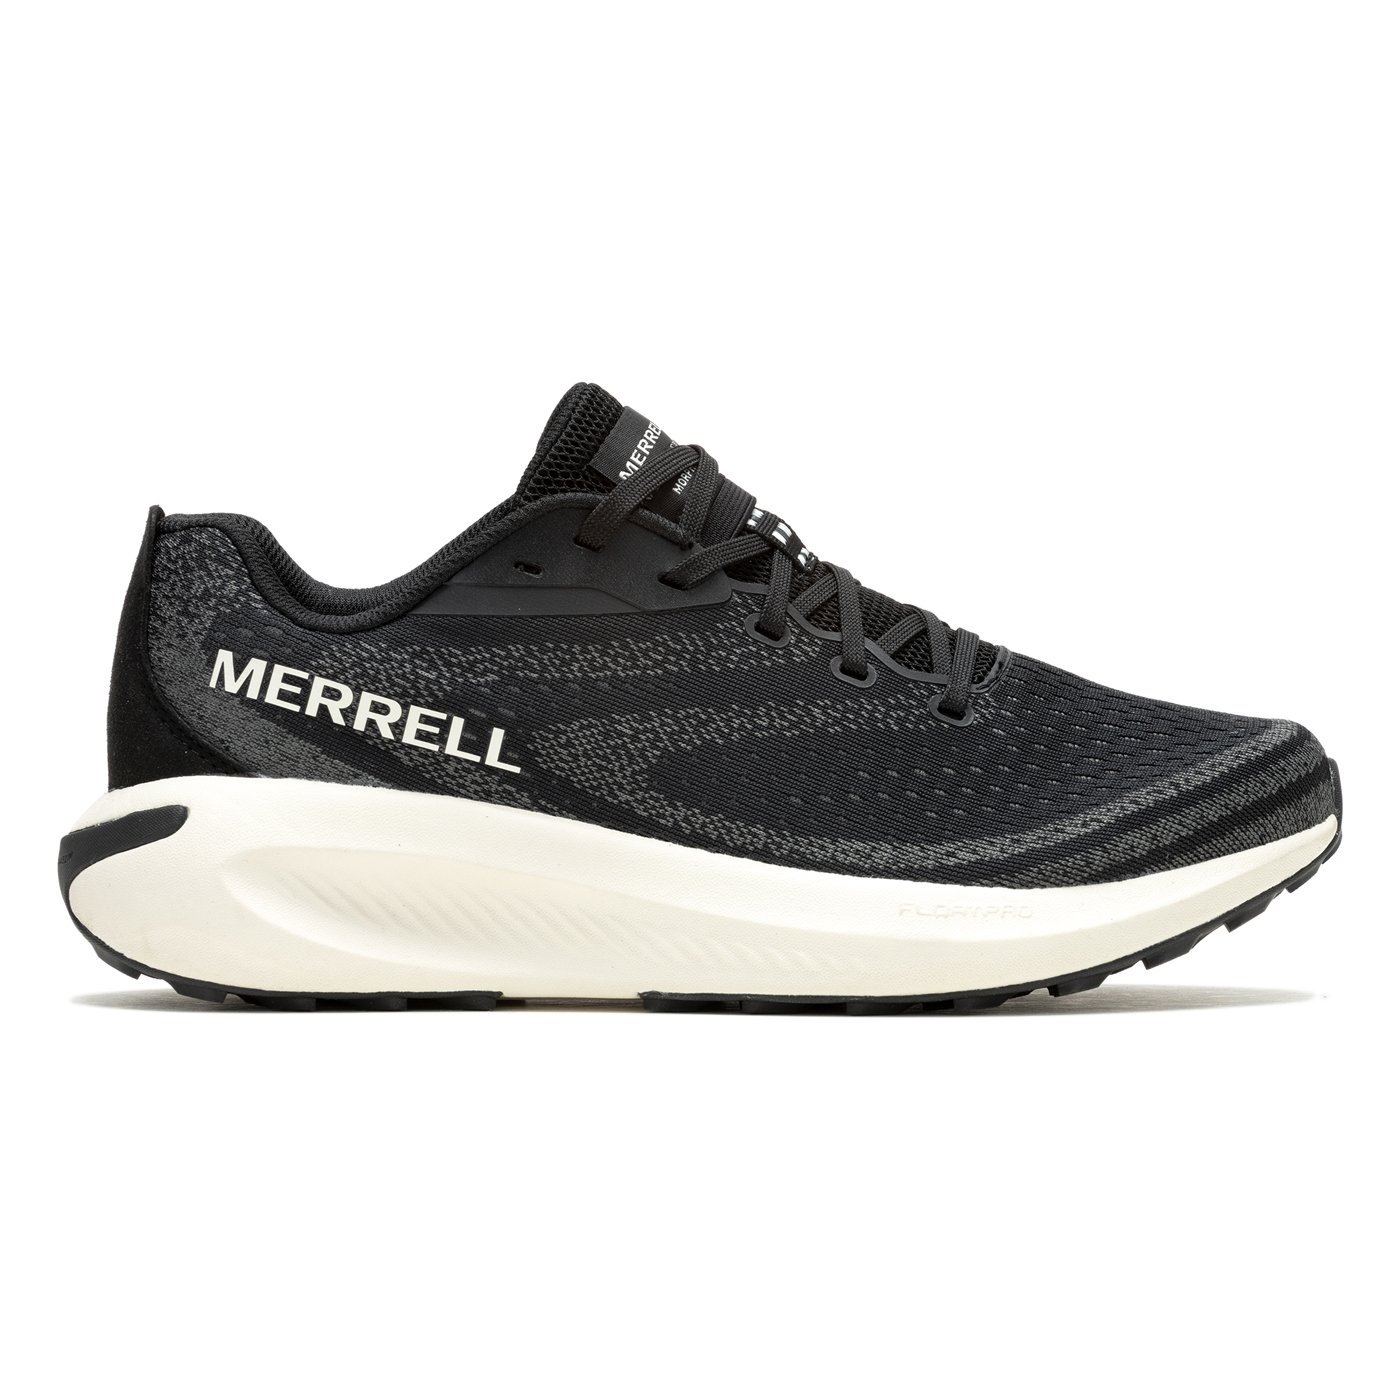 Merrell Morpholite Kadın Patika Koşu Ayakkabısı - Siyah - 1